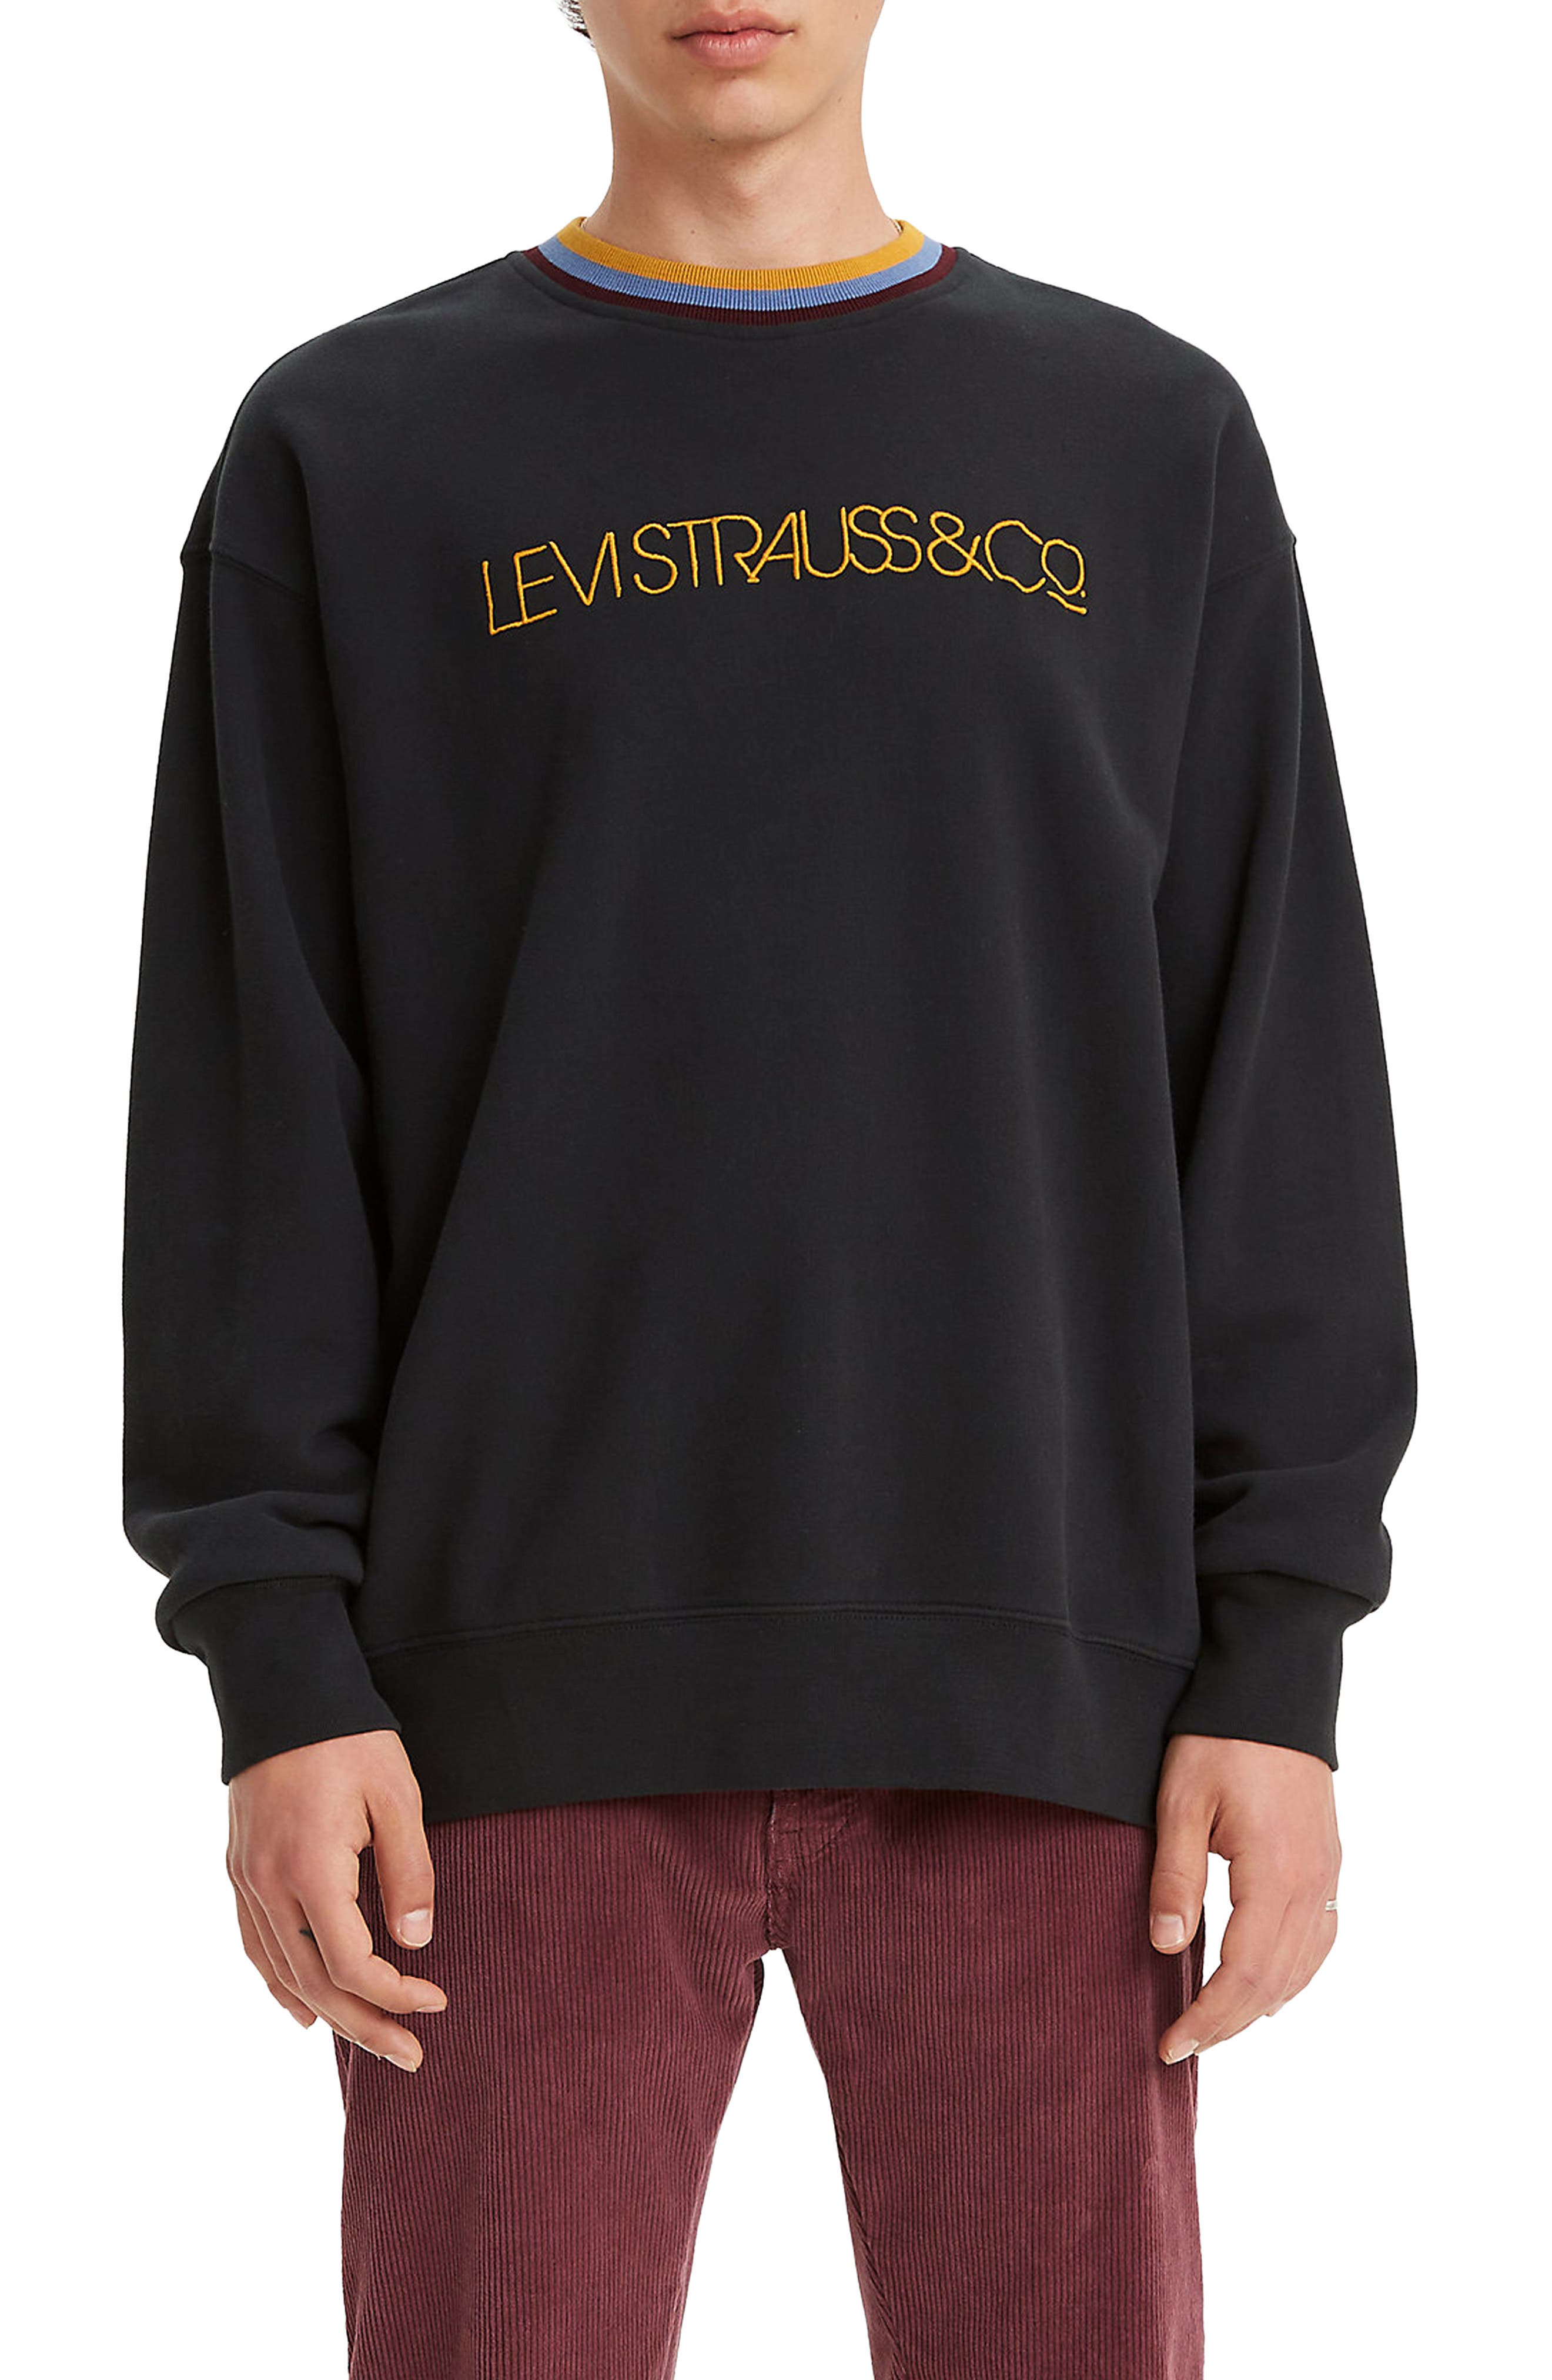 levi's crew neck sweater